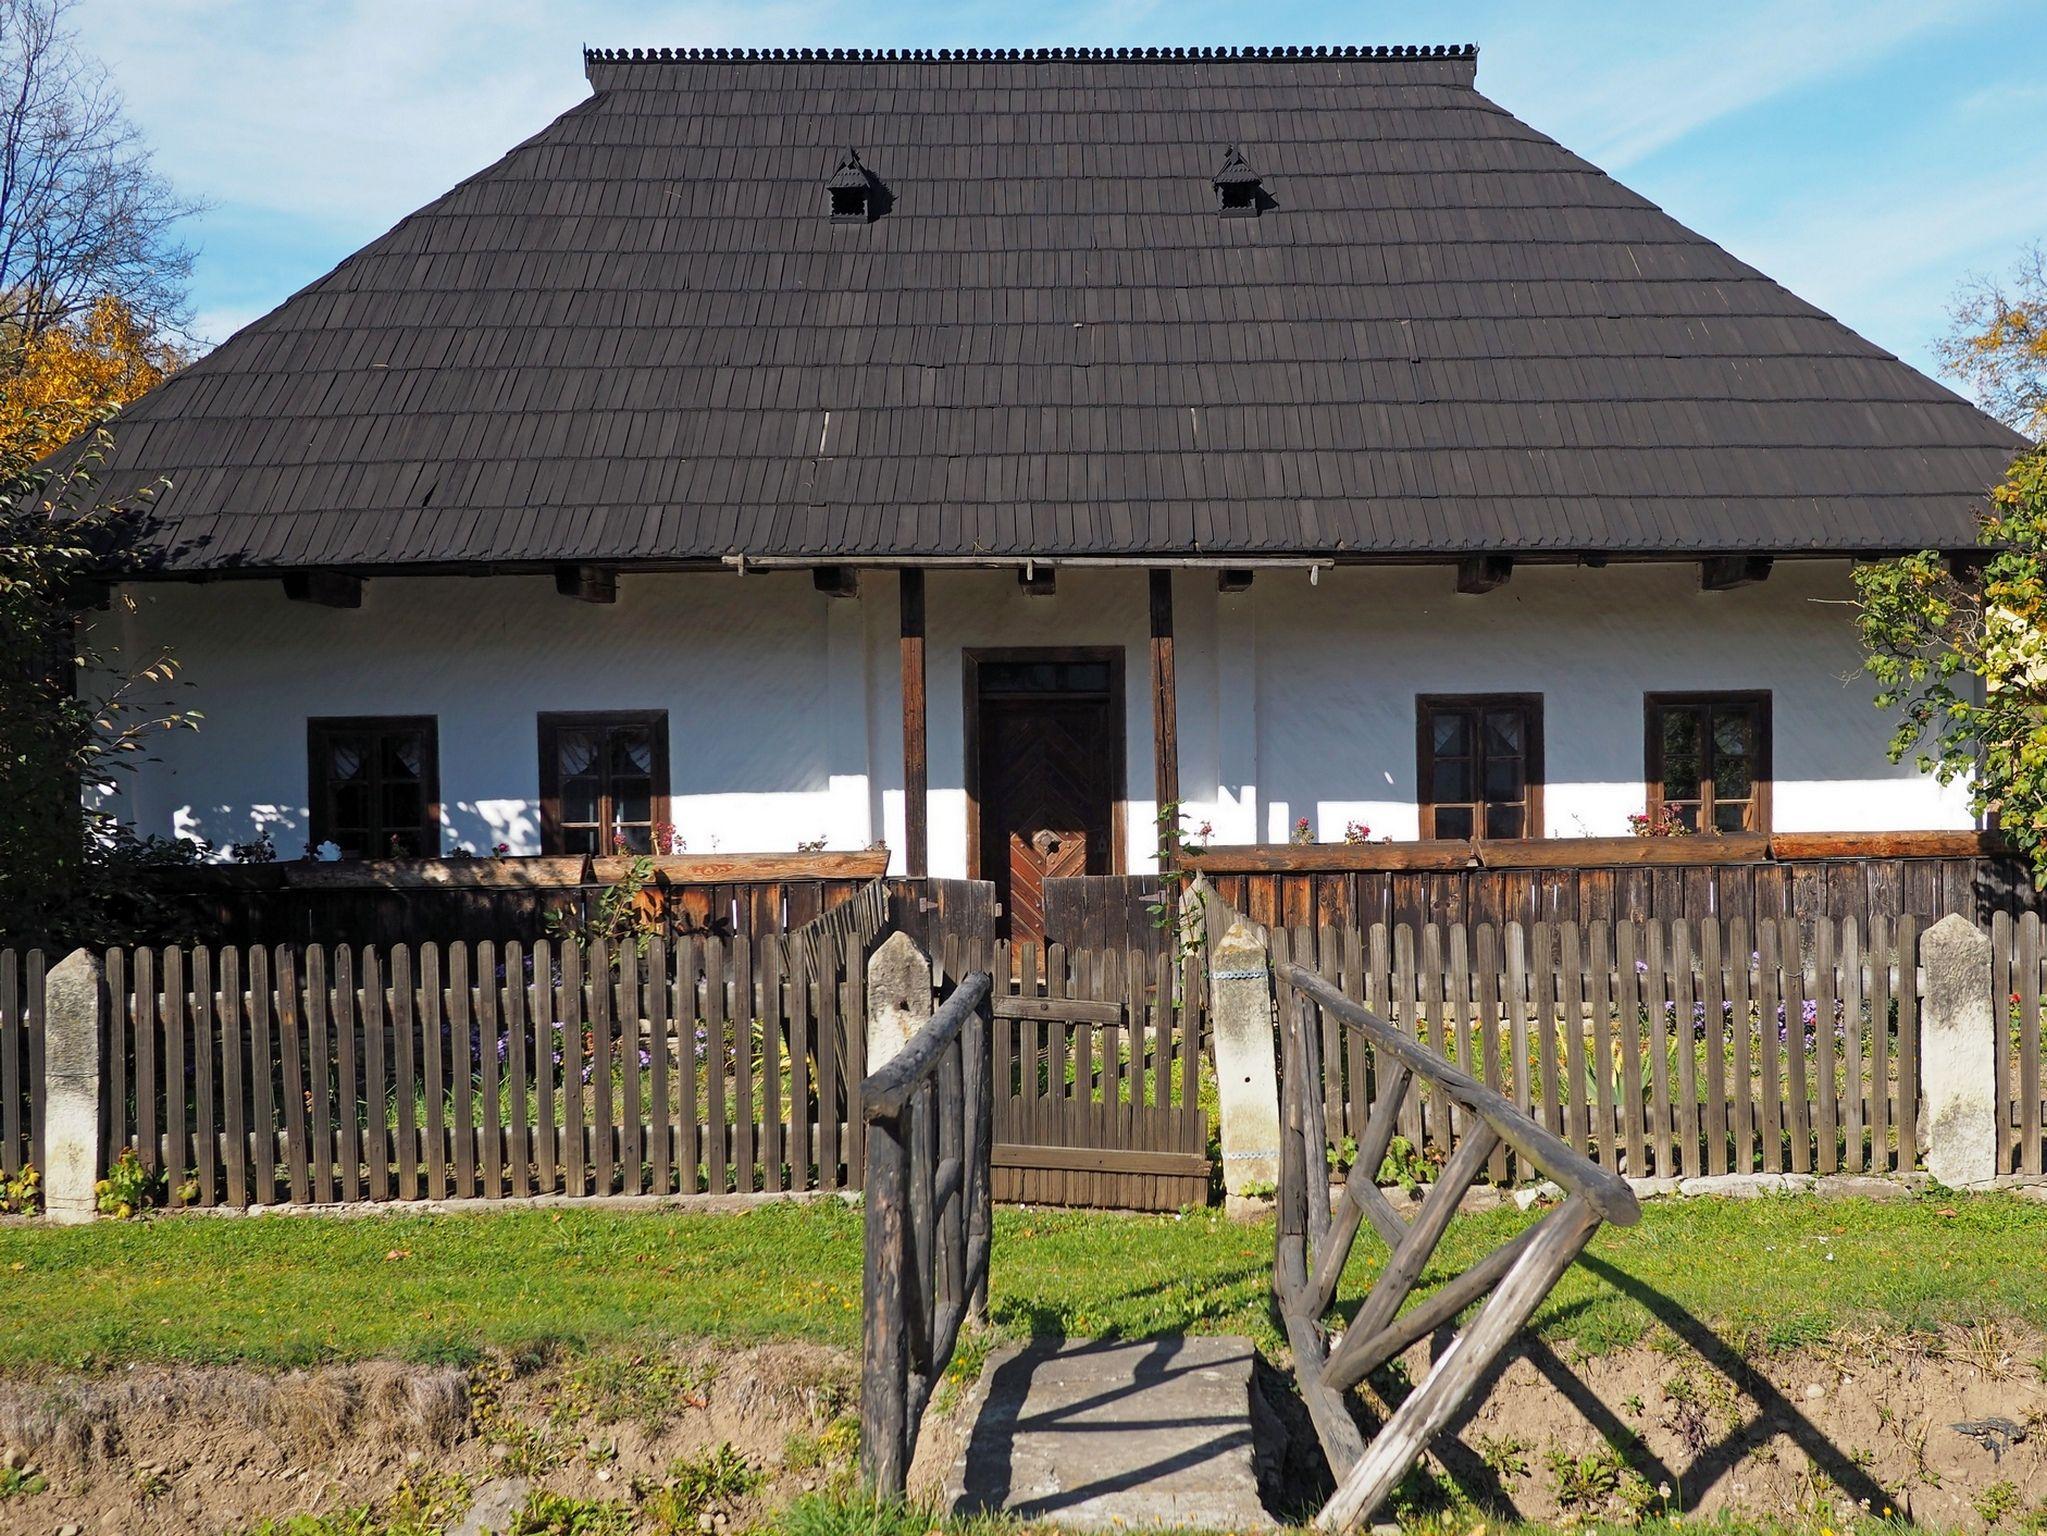 Casă tradițională bucovineană transformată în muzeu, în Putna